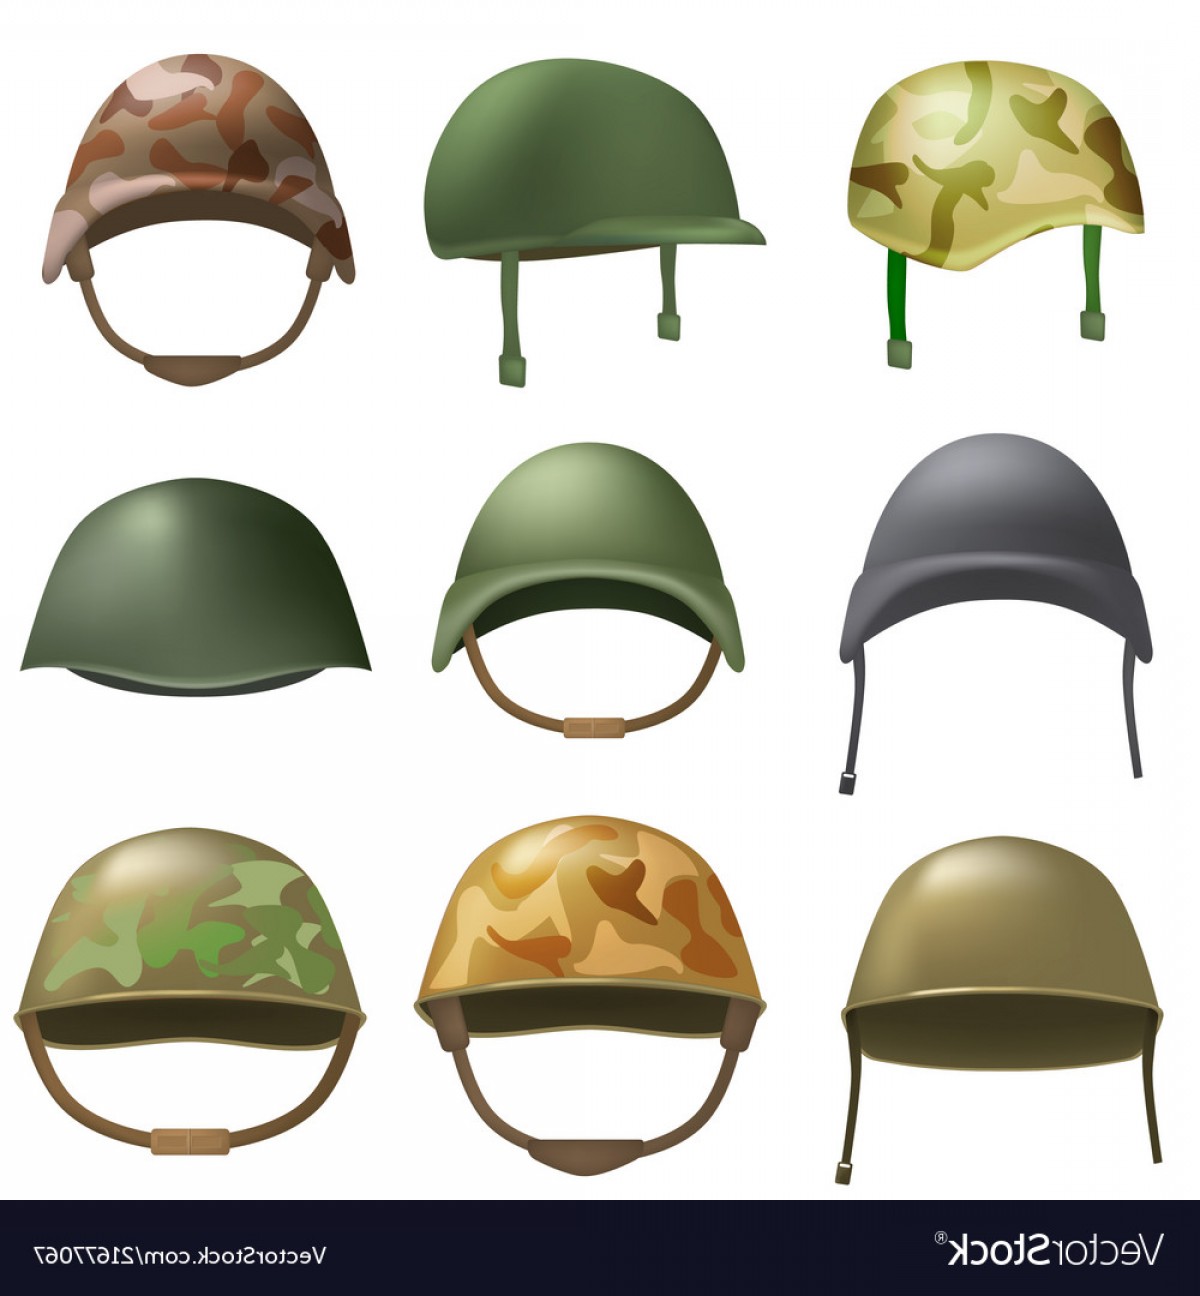 Army helmet soldier.